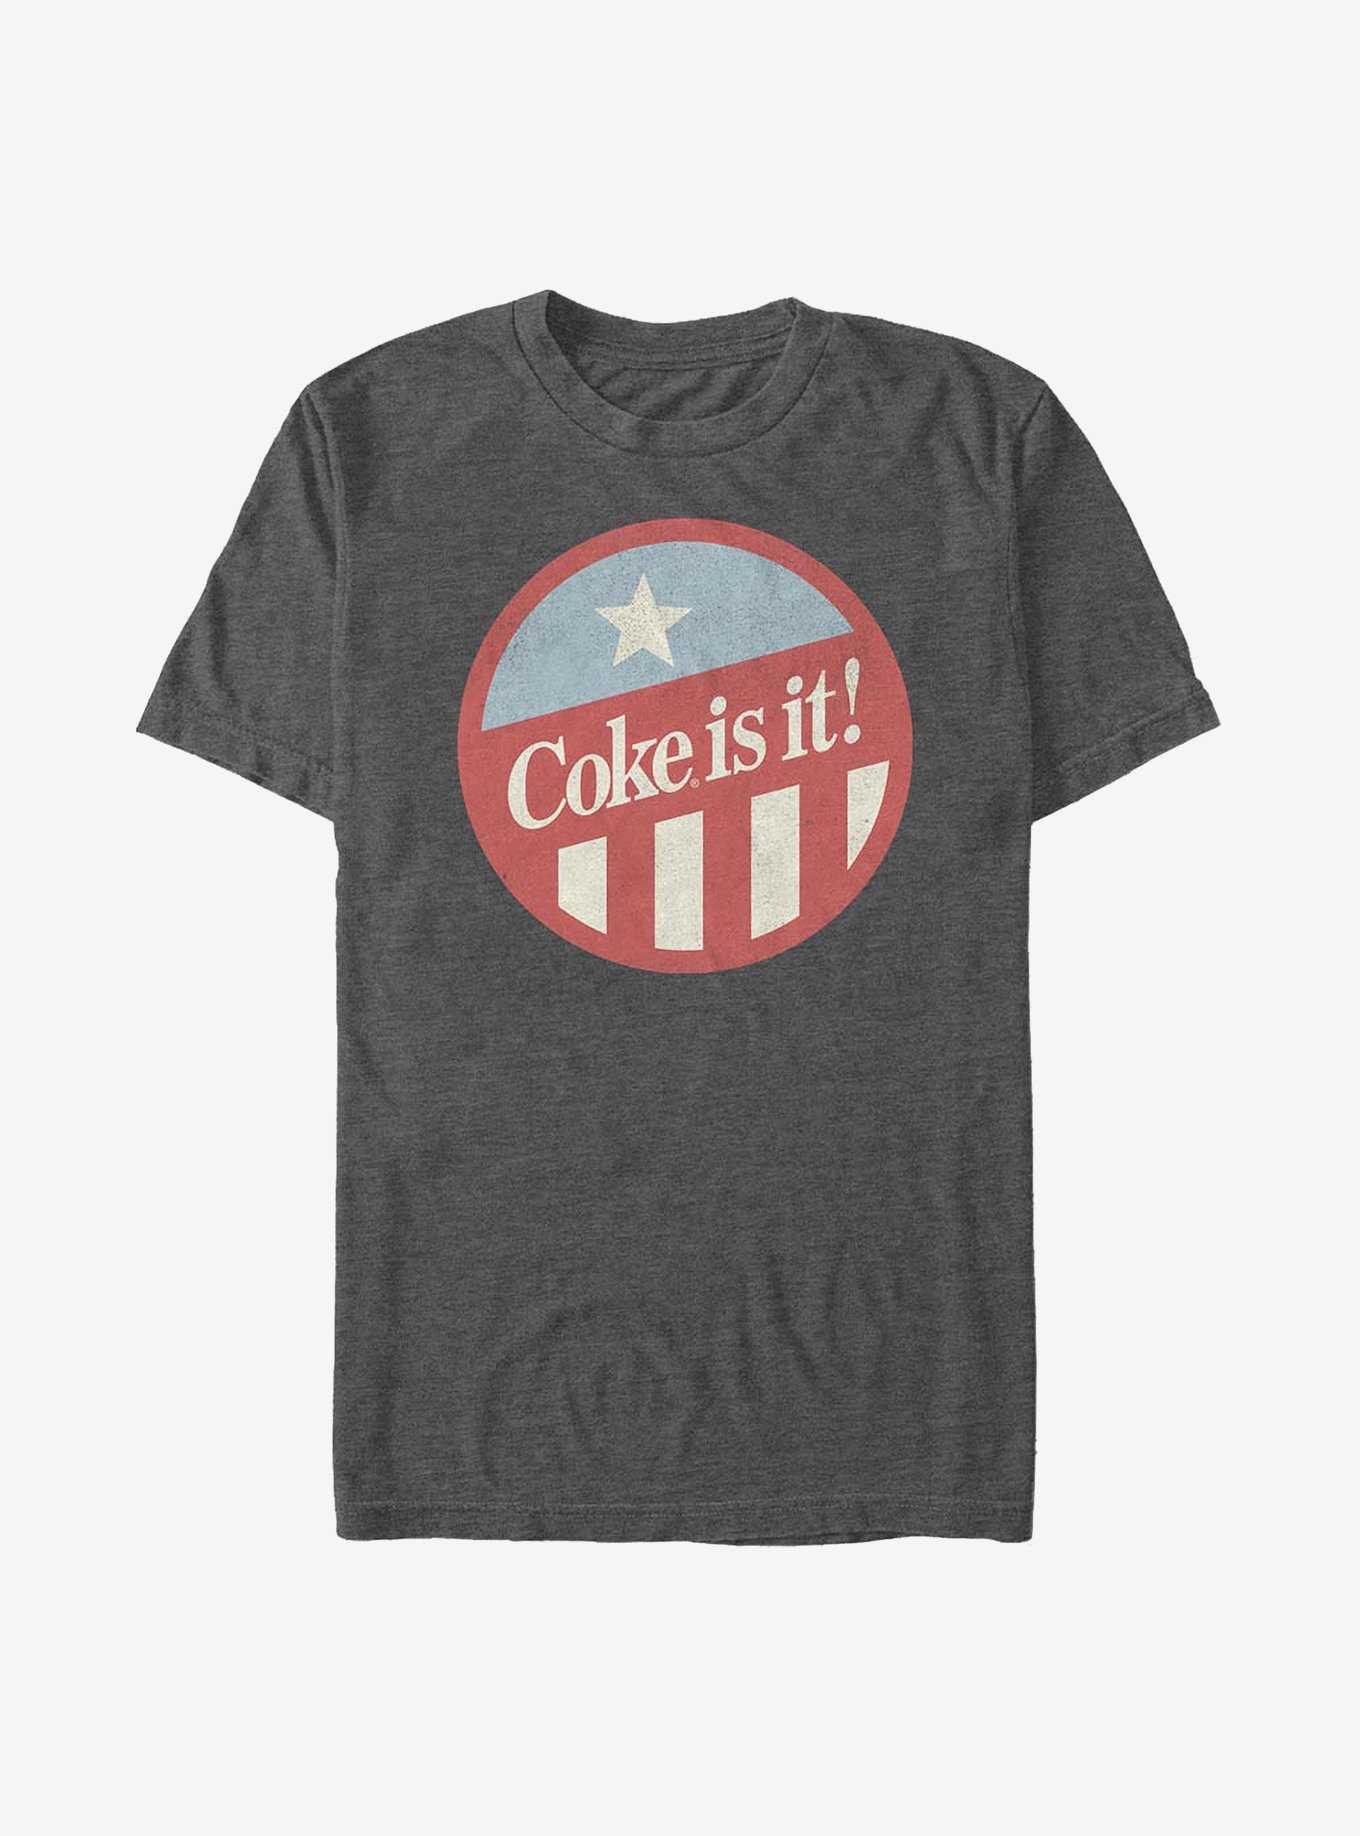 Coca-Cola Coke Is It! T-Shirt, , hi-res